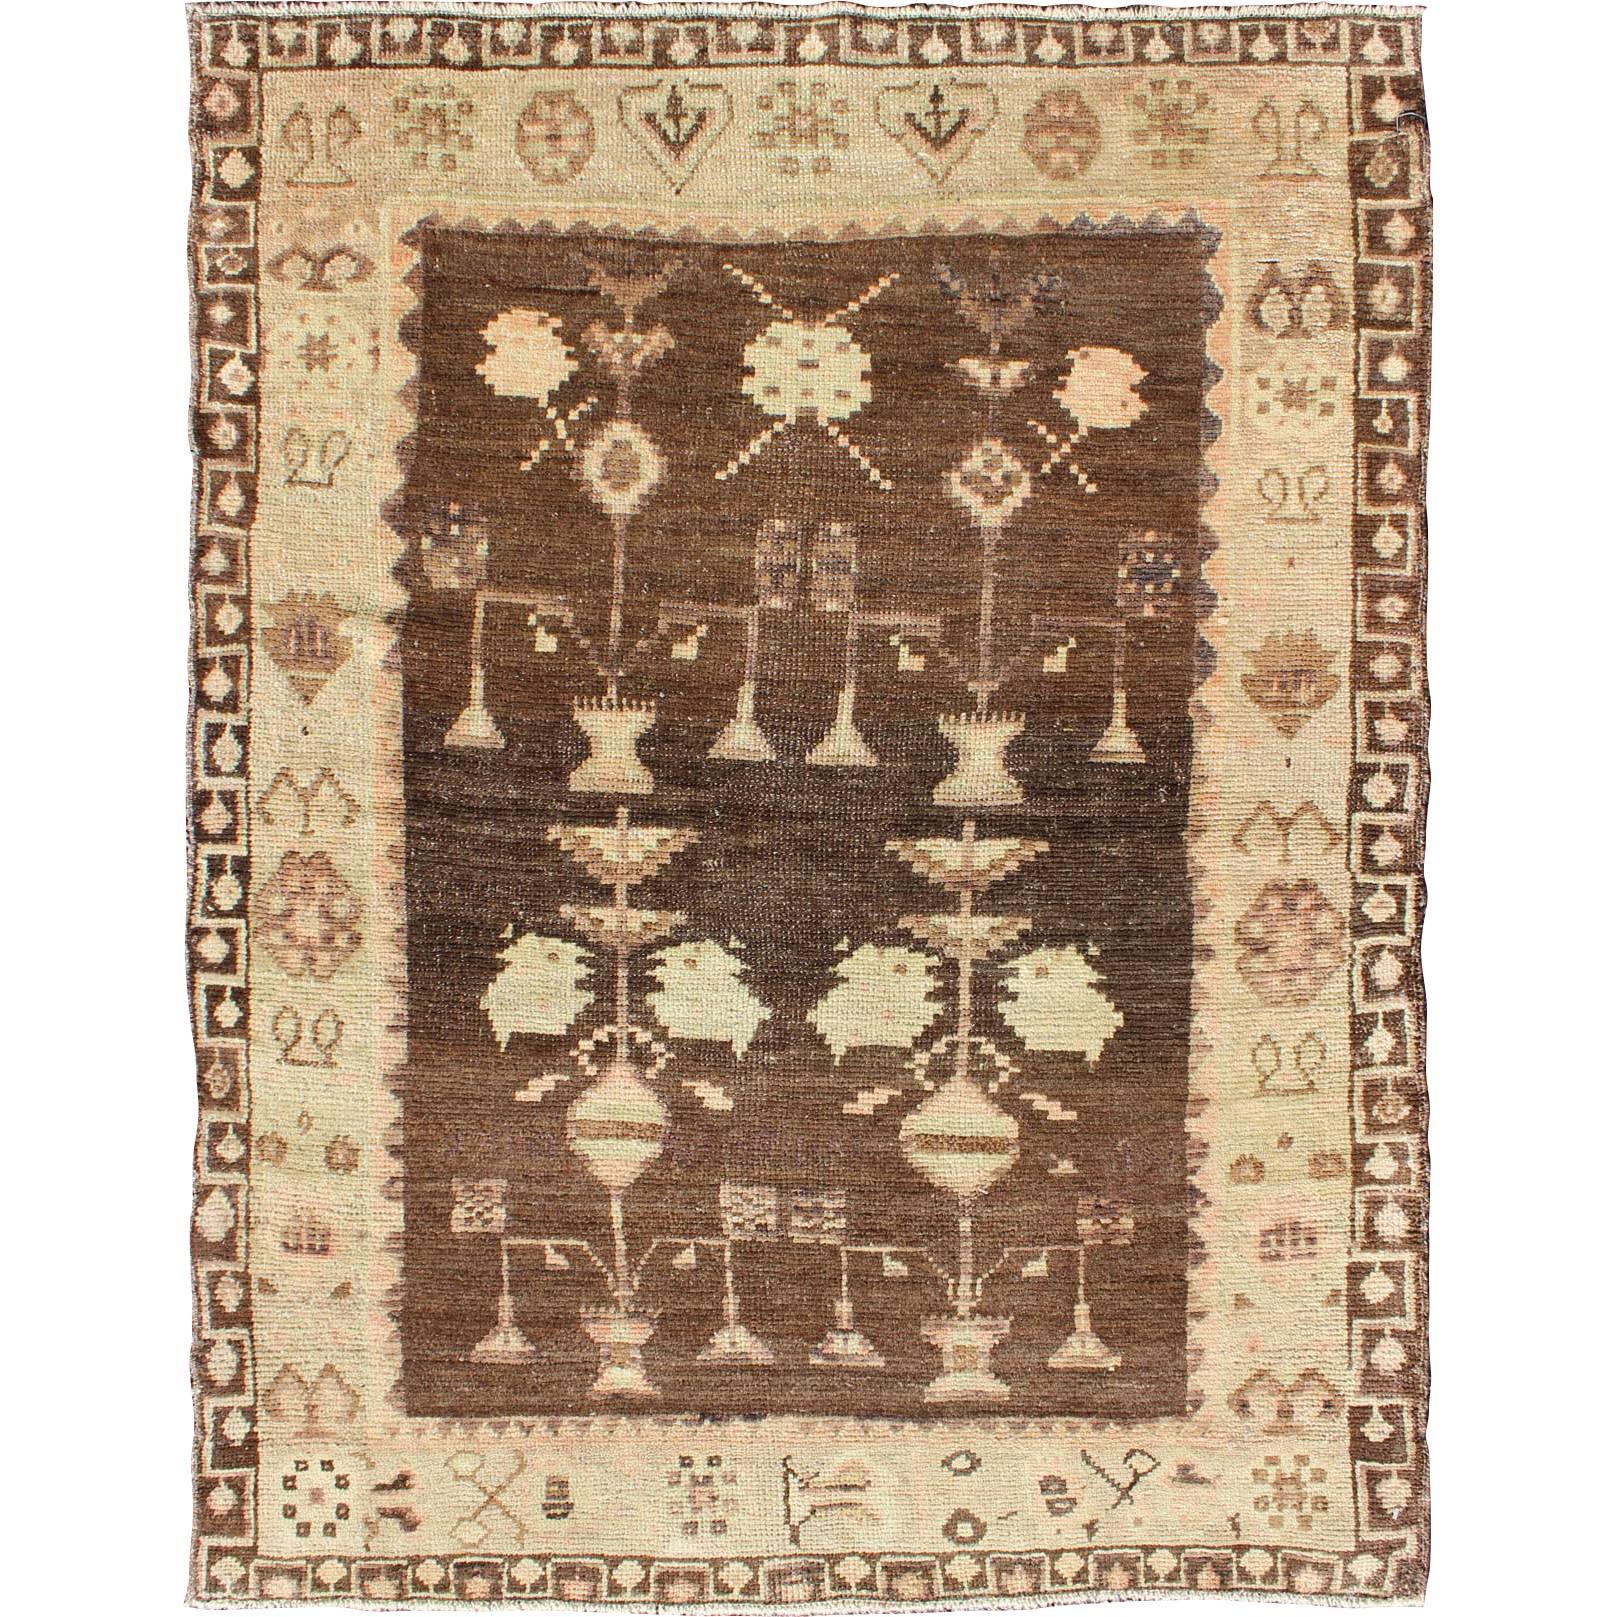 Vintage Turkish Oushak Carpet with Tribal Design Set on Brown Background For Sale